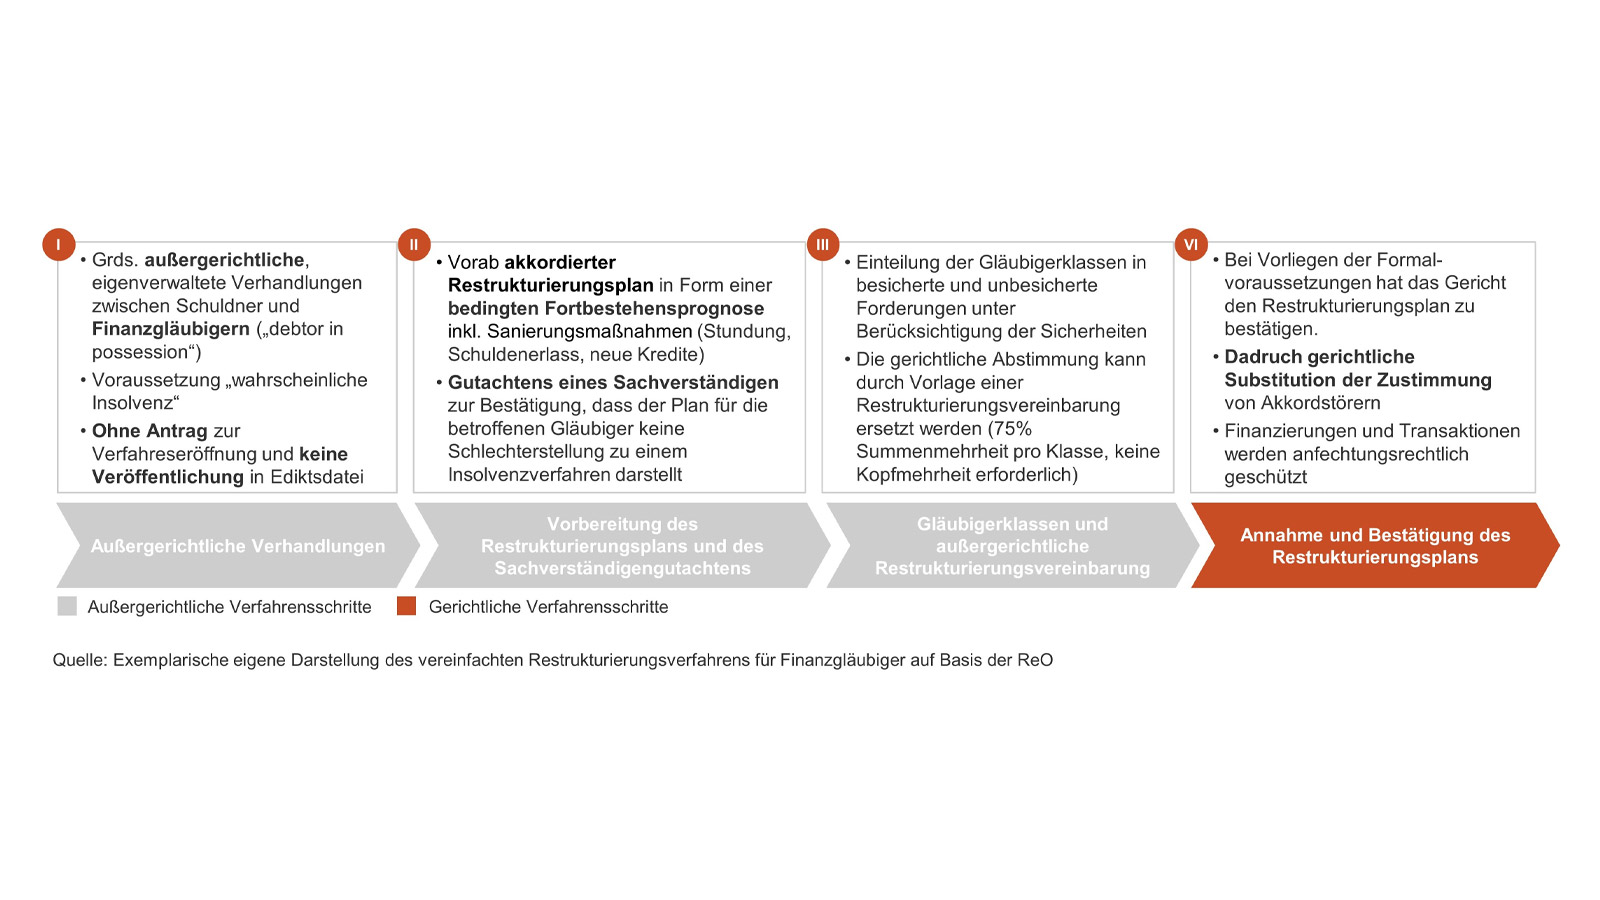 Newsletter 03/2021 – Die neue Restrukturierungsordnung, Teil 2: Der österreichische „Pre-Packaged Deal“